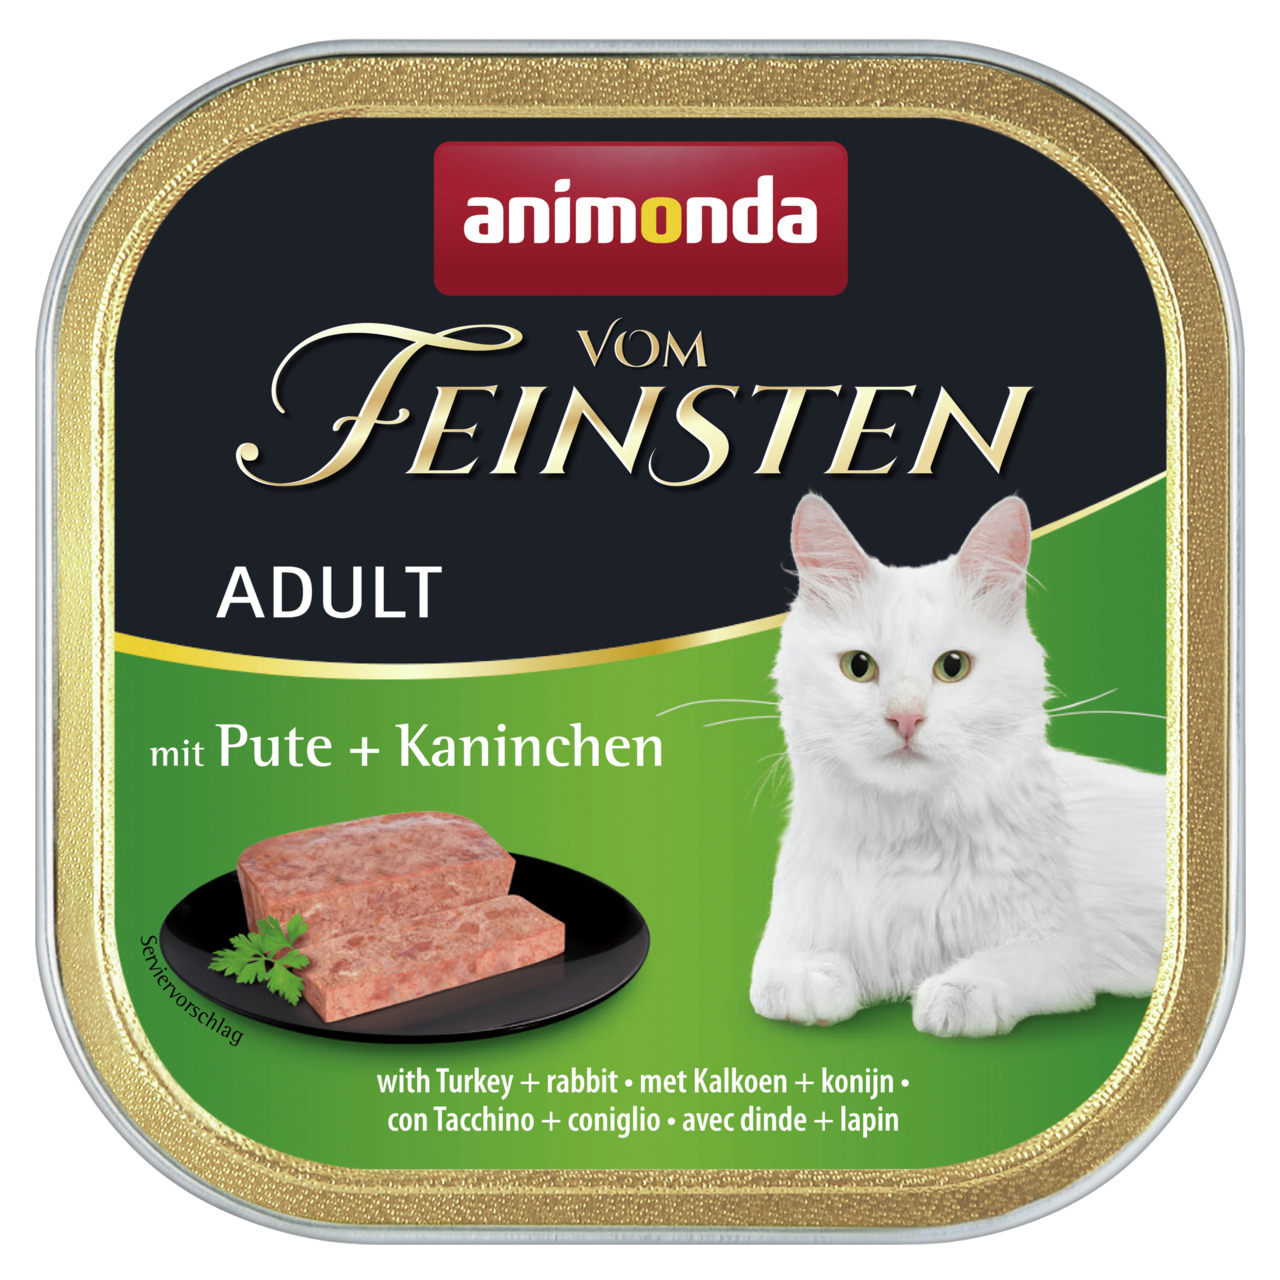 Animonda vom Feinsten Adult Pute und Kaninchen Katzen Nassfutter 100 g